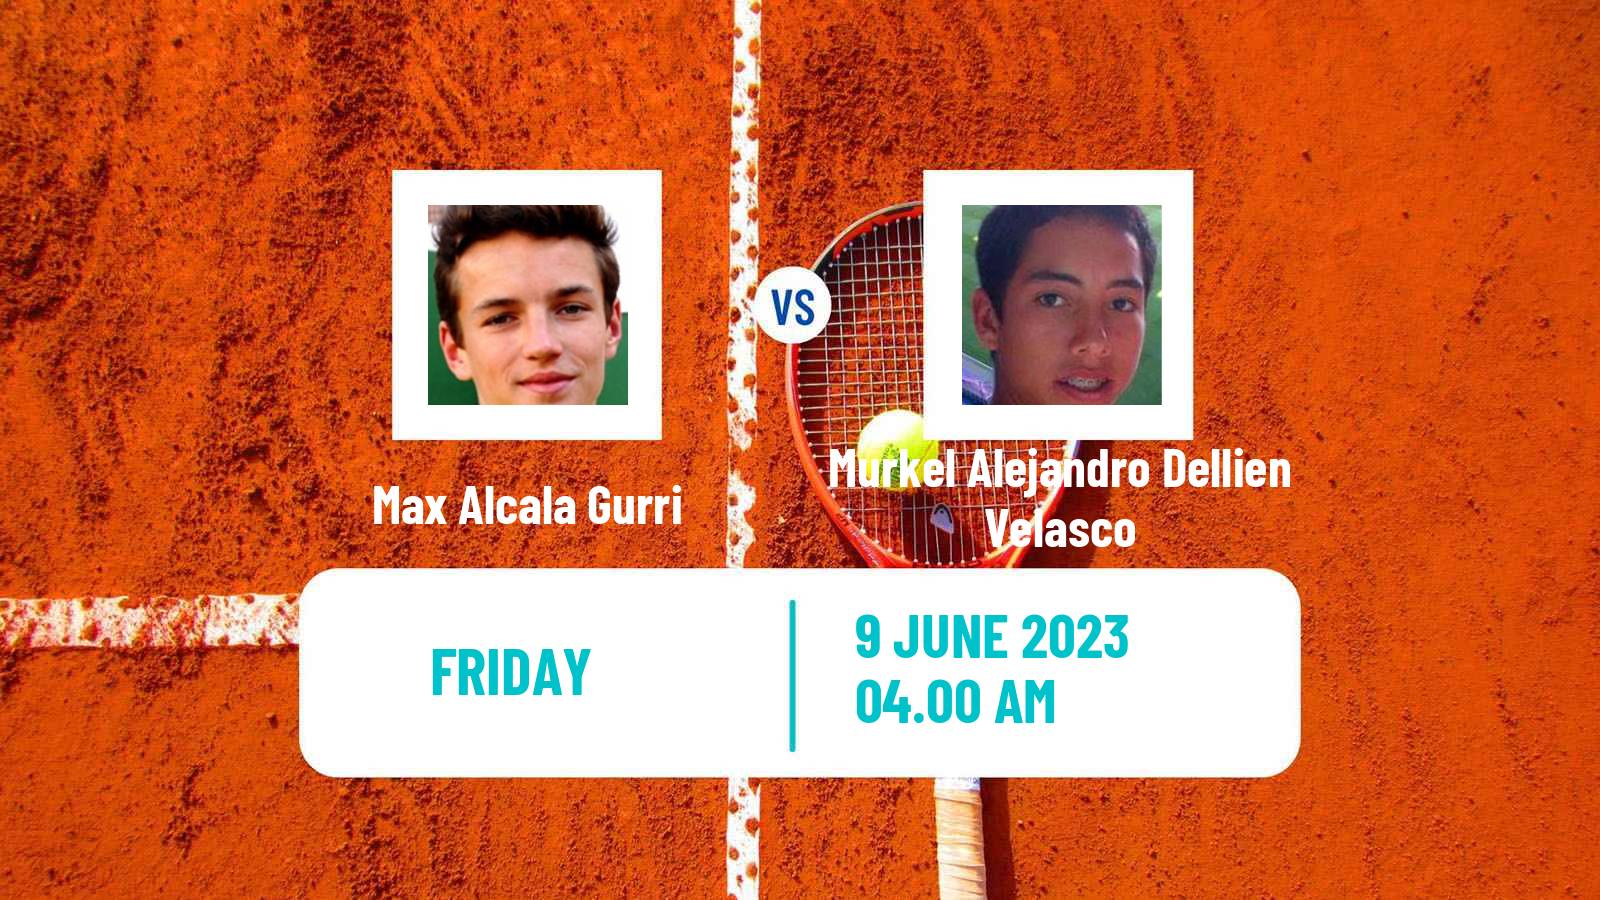 Tennis ITF M25 Cordoba Men Max Alcala Gurri - Murkel Alejandro Dellien Velasco